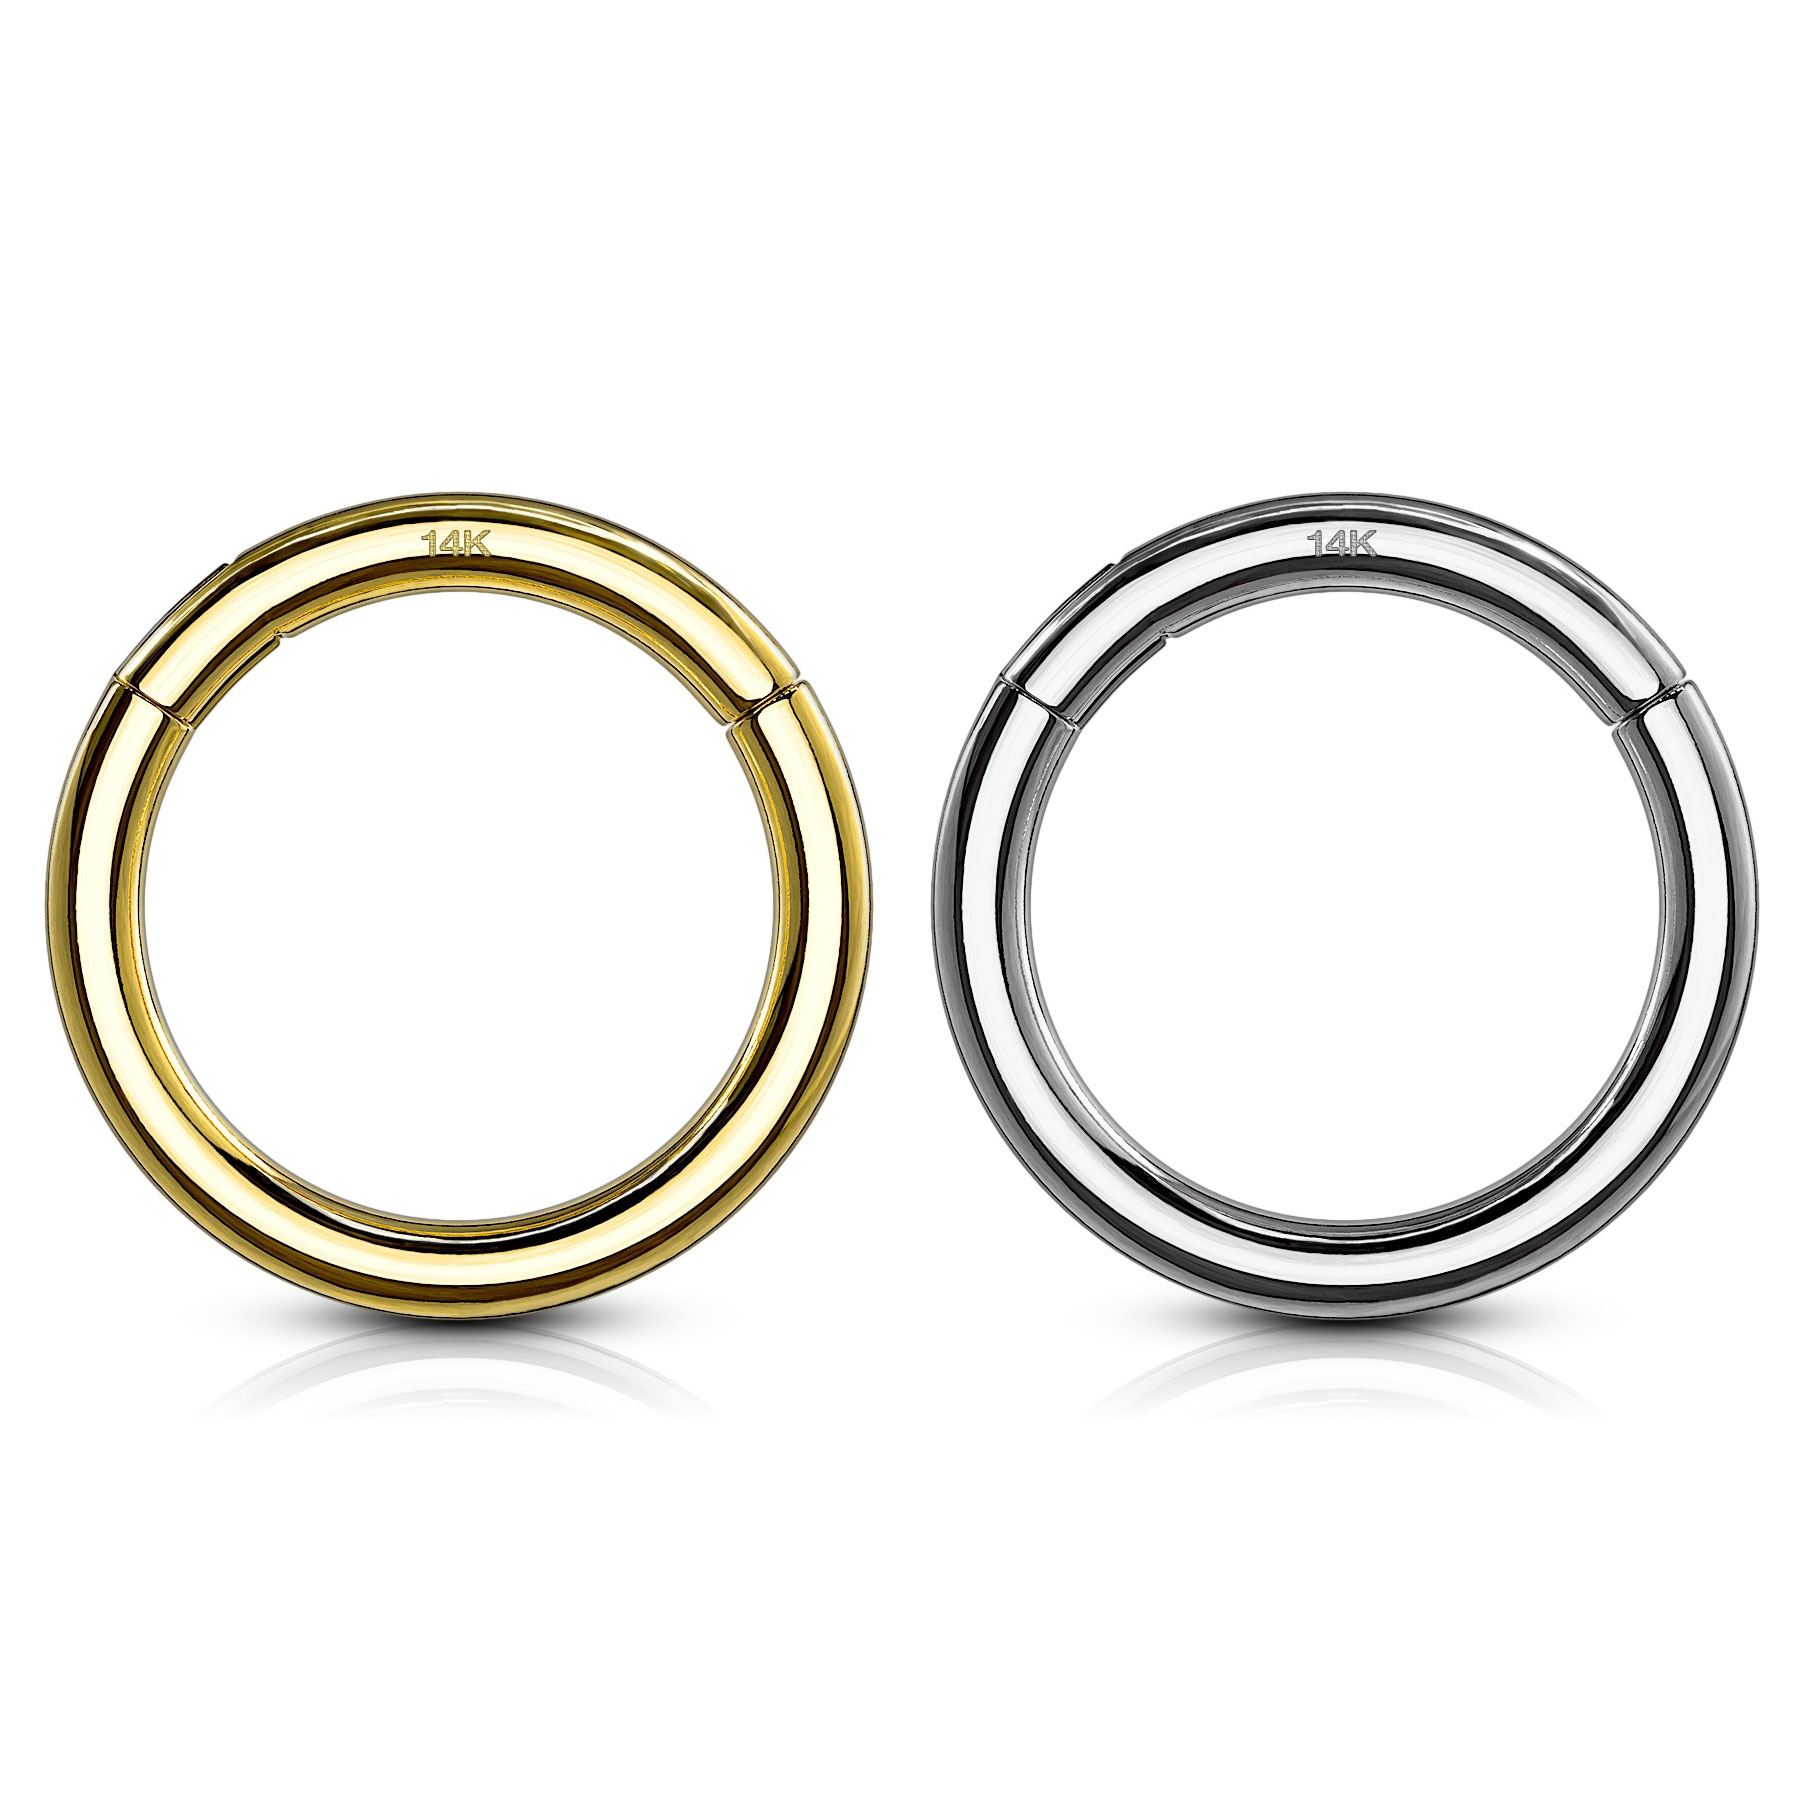 Segment ring van 14 karaats goud met scharnier